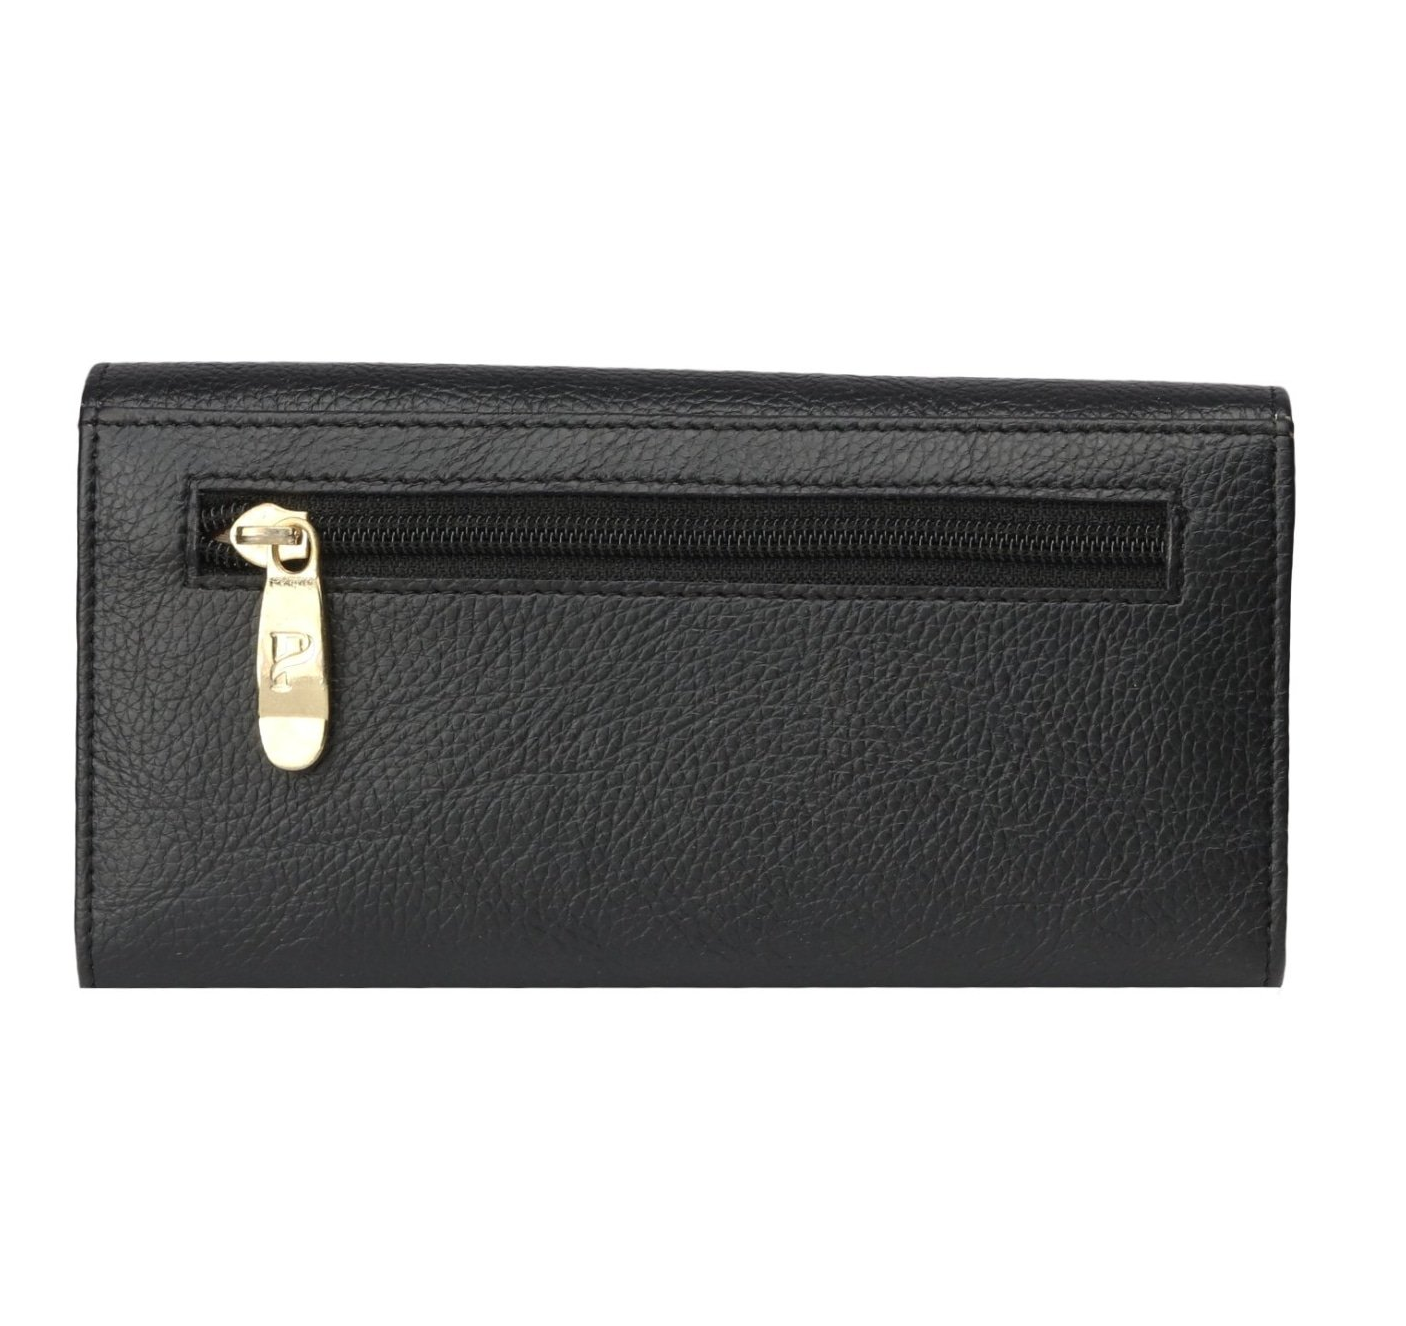 Pochette Tan Striped Wallet(Black)